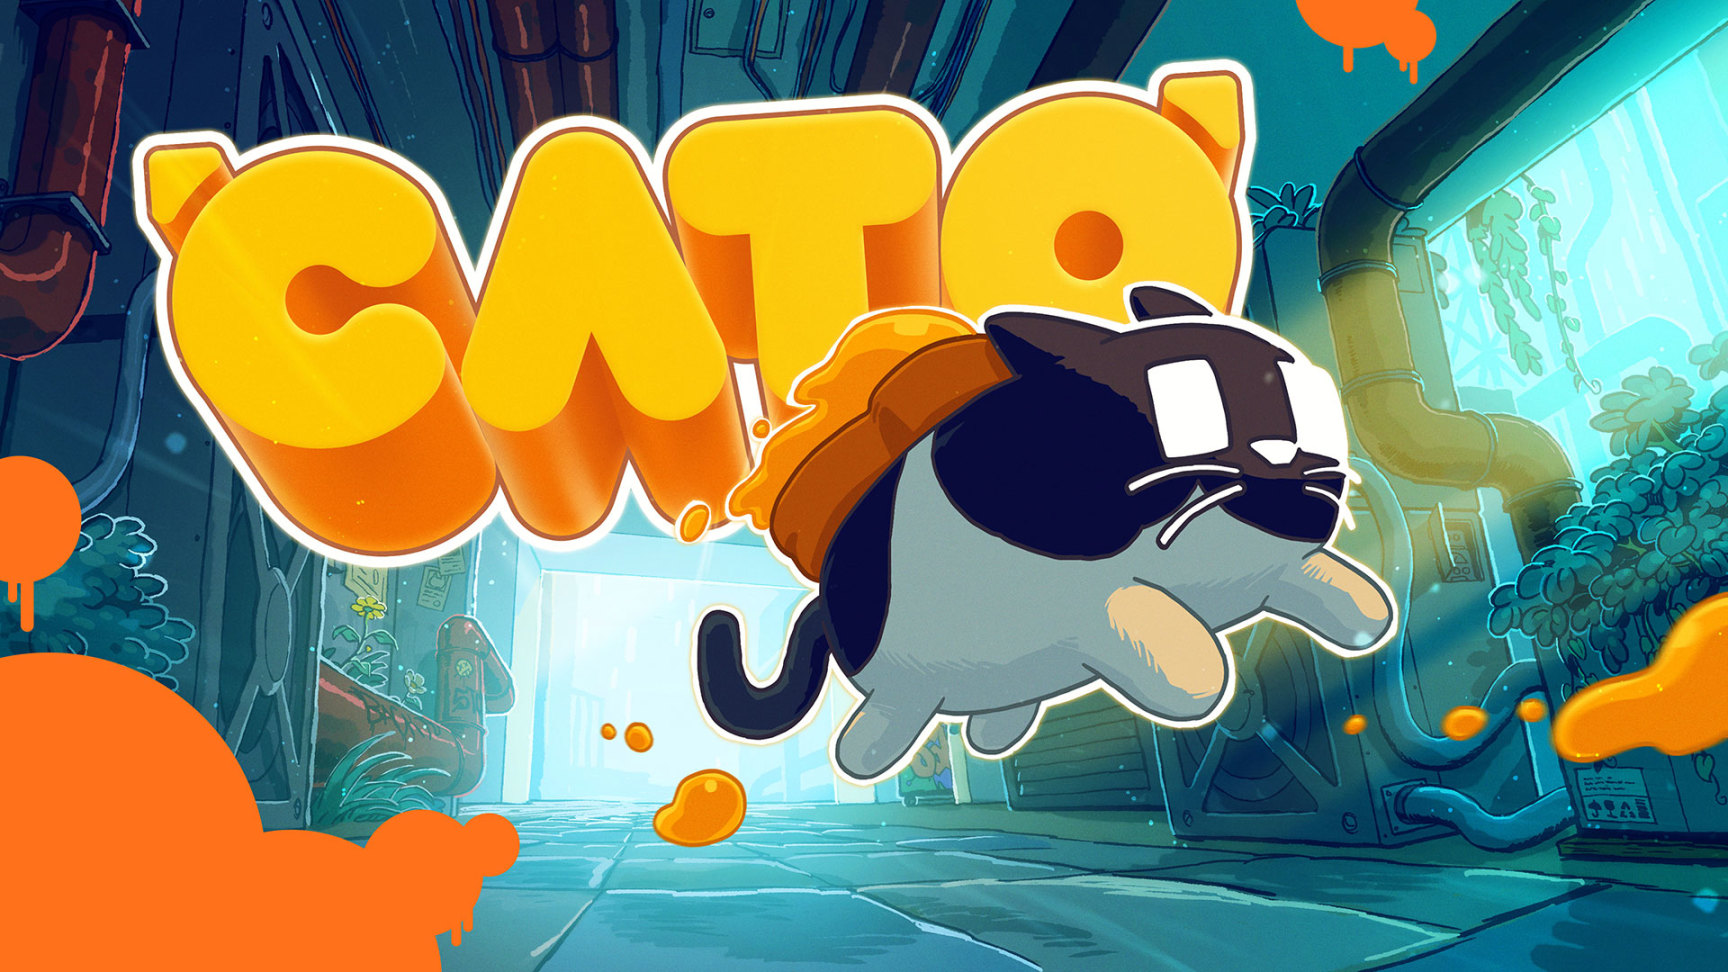 【PC游戏】黄油猫悖论解谜游戏《CATO》正顺利开发中-第1张